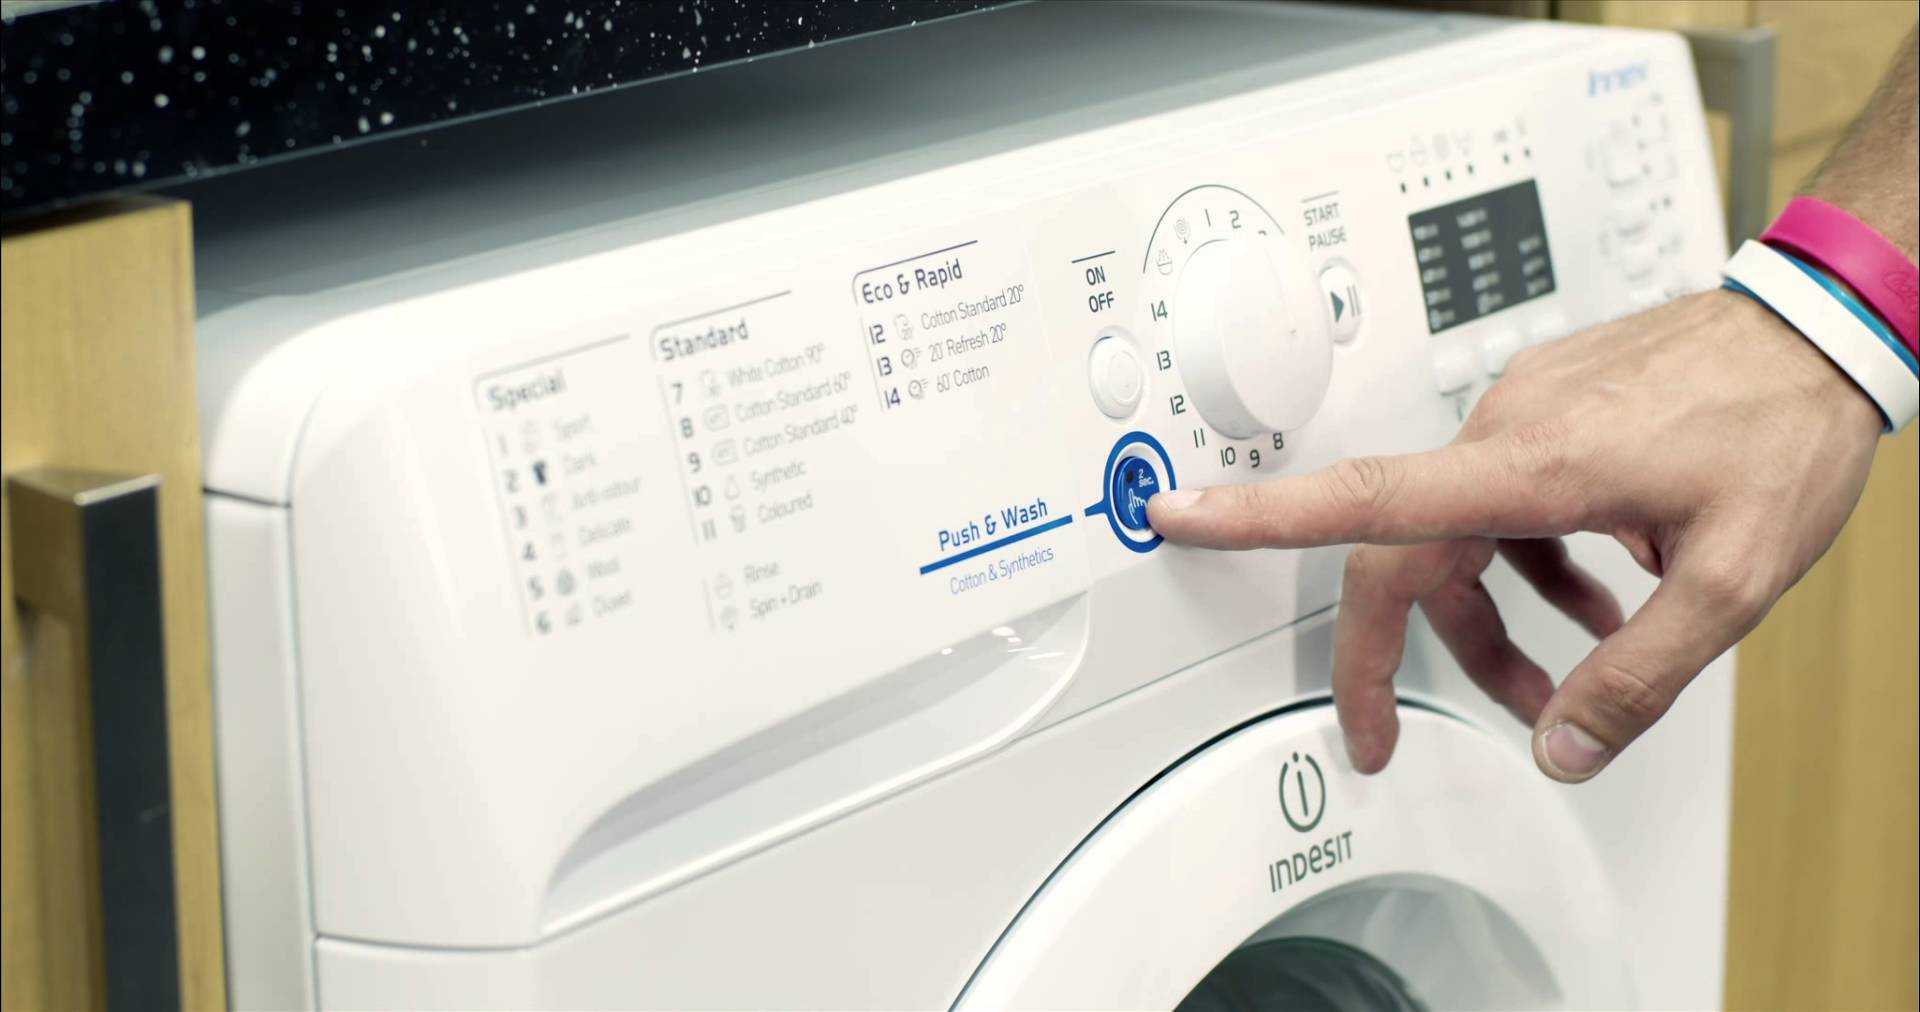 Не работает стиральная машина - почему и что делать